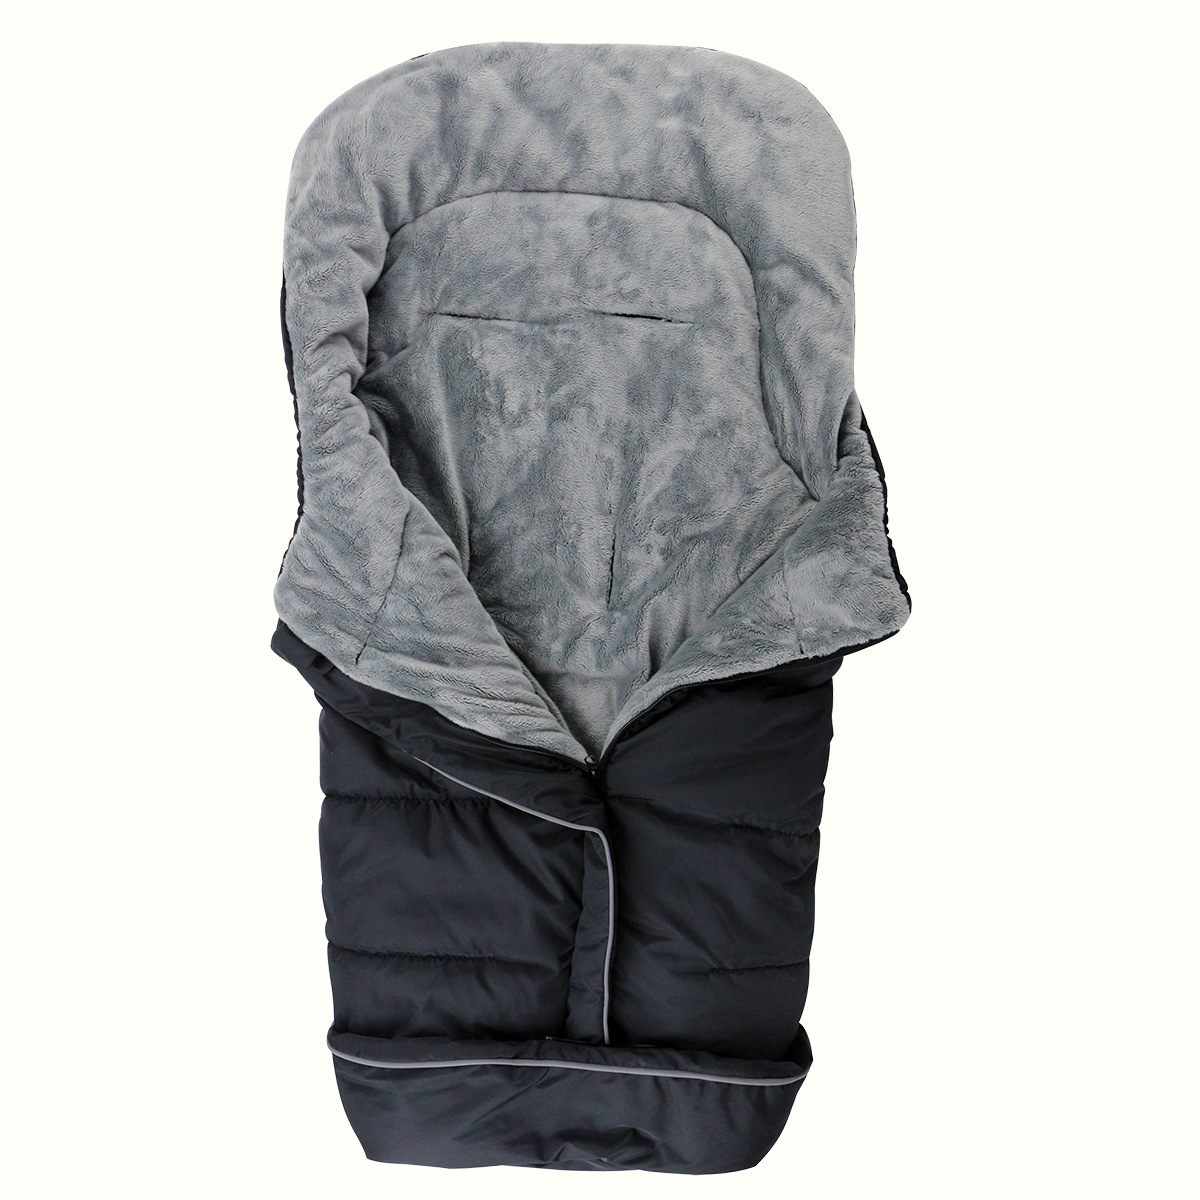 现货真空包装秋冬季加厚婴儿推车保暖睡袋信封式防风保暖婴儿睡袋